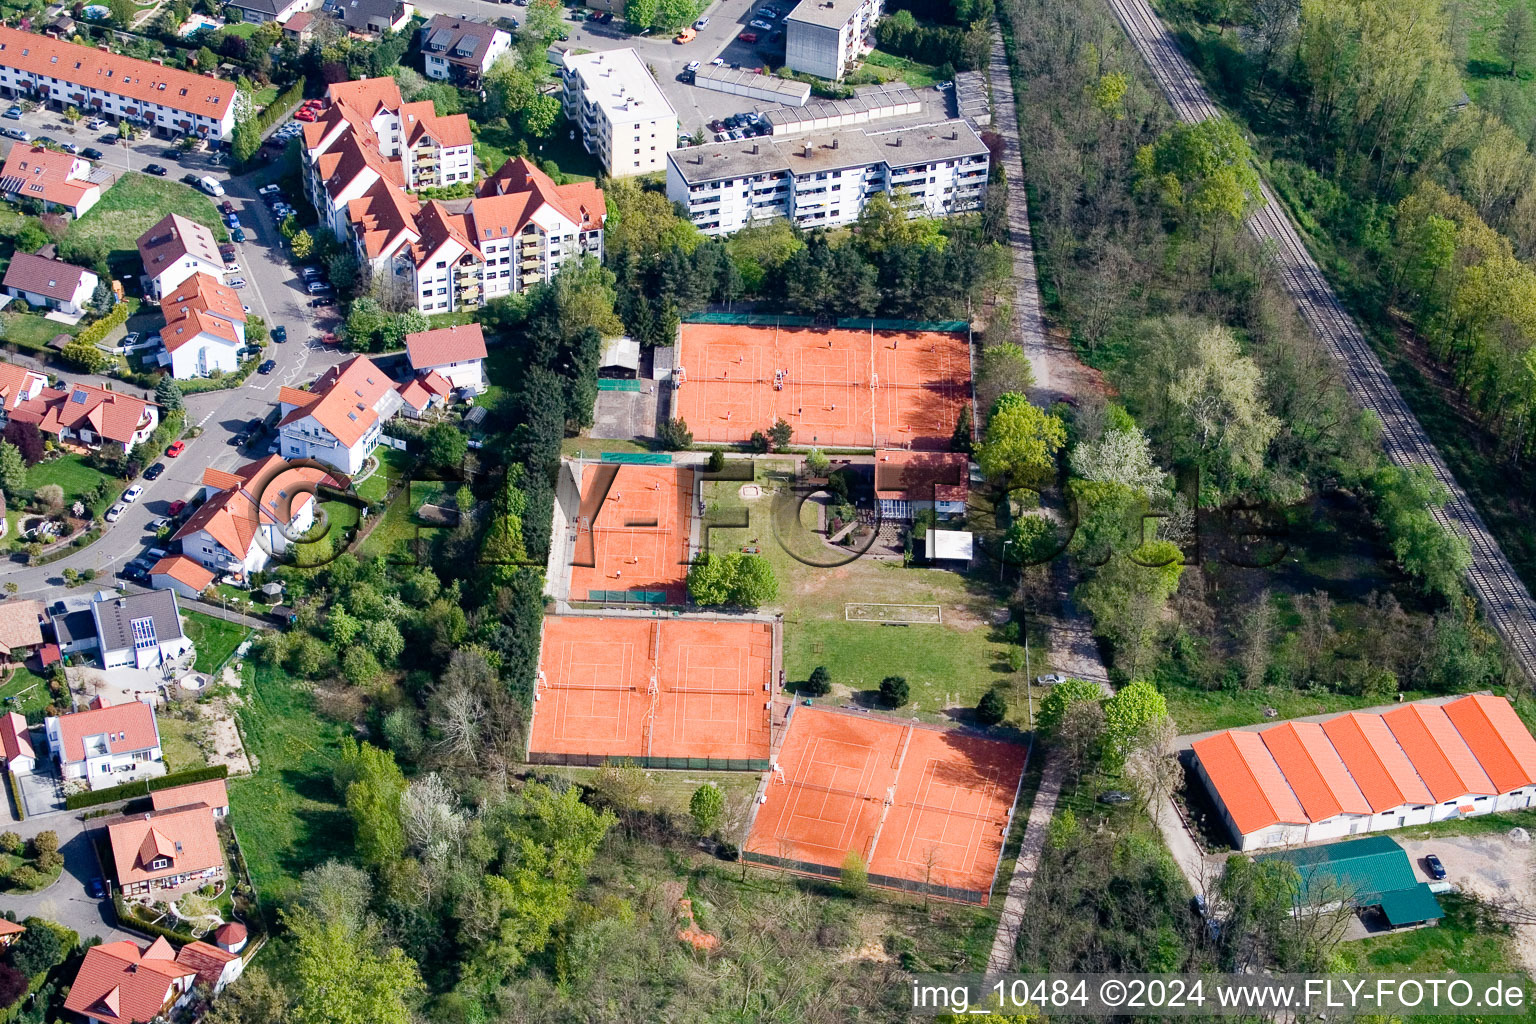 Club de tennis à Jockgrim dans le département Rhénanie-Palatinat, Allemagne d'en haut